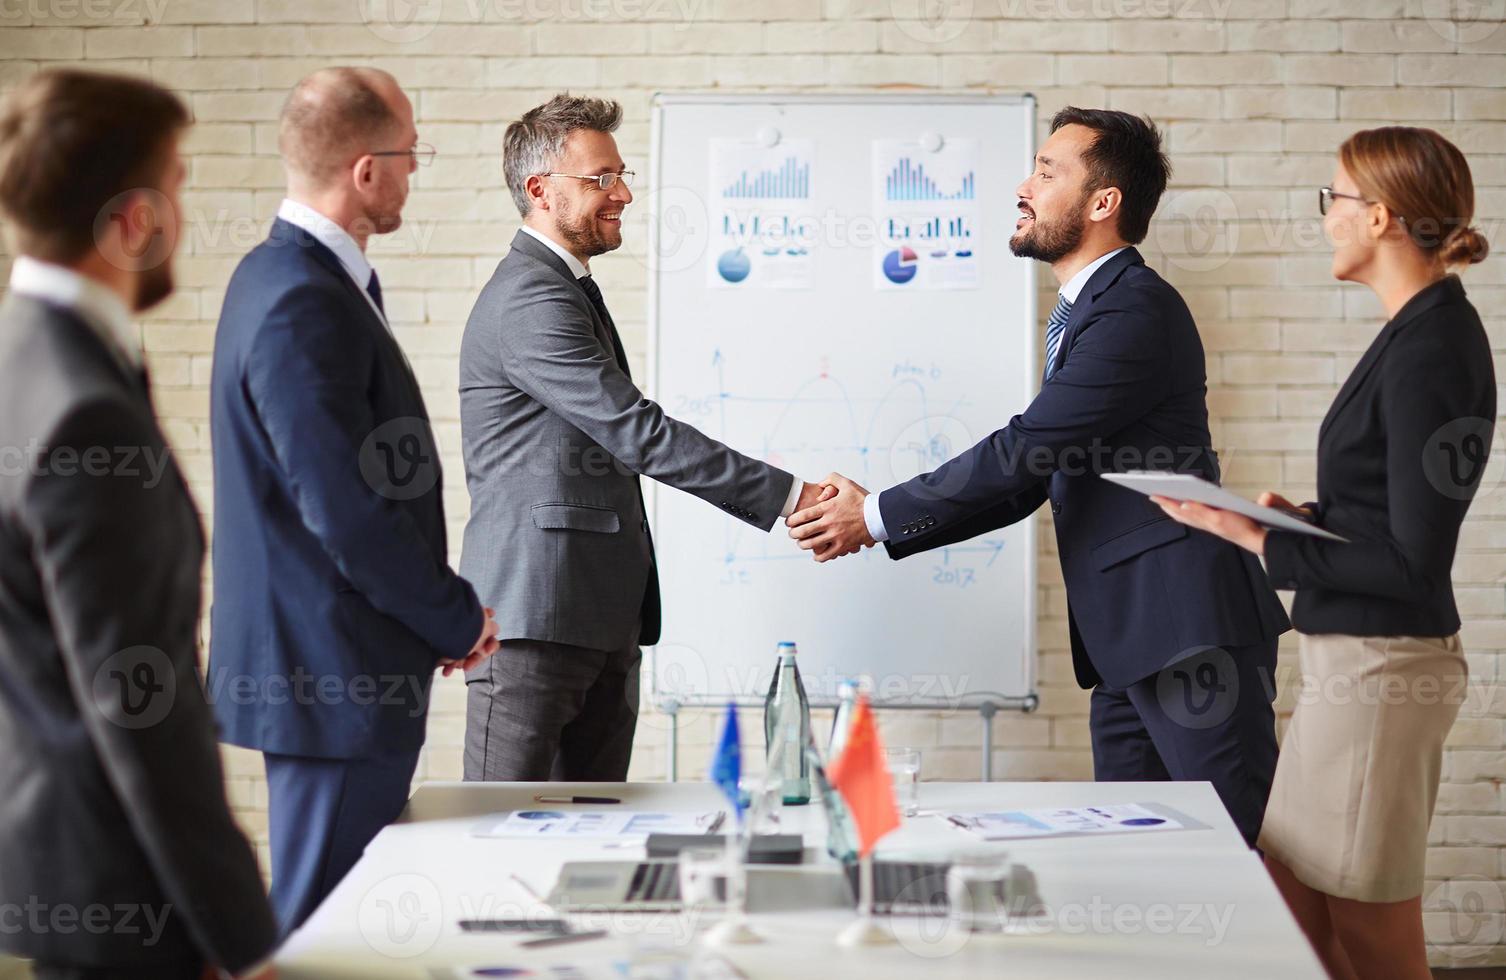 Business handshaking photo